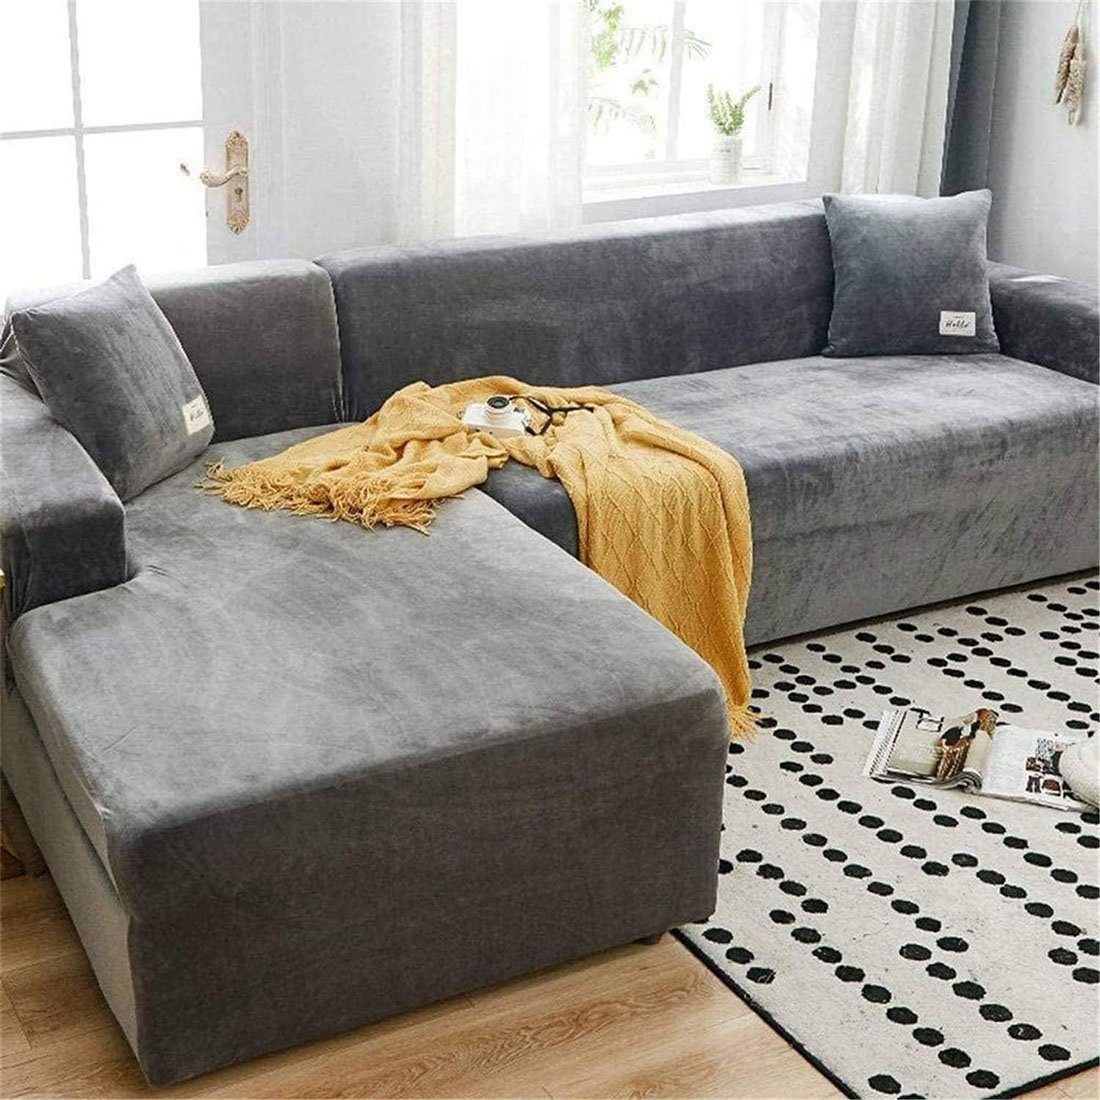 Sofahusse Couch Pets Sofa überzug überzug, Dog CTGtree Sofa Stretch Überwürfe